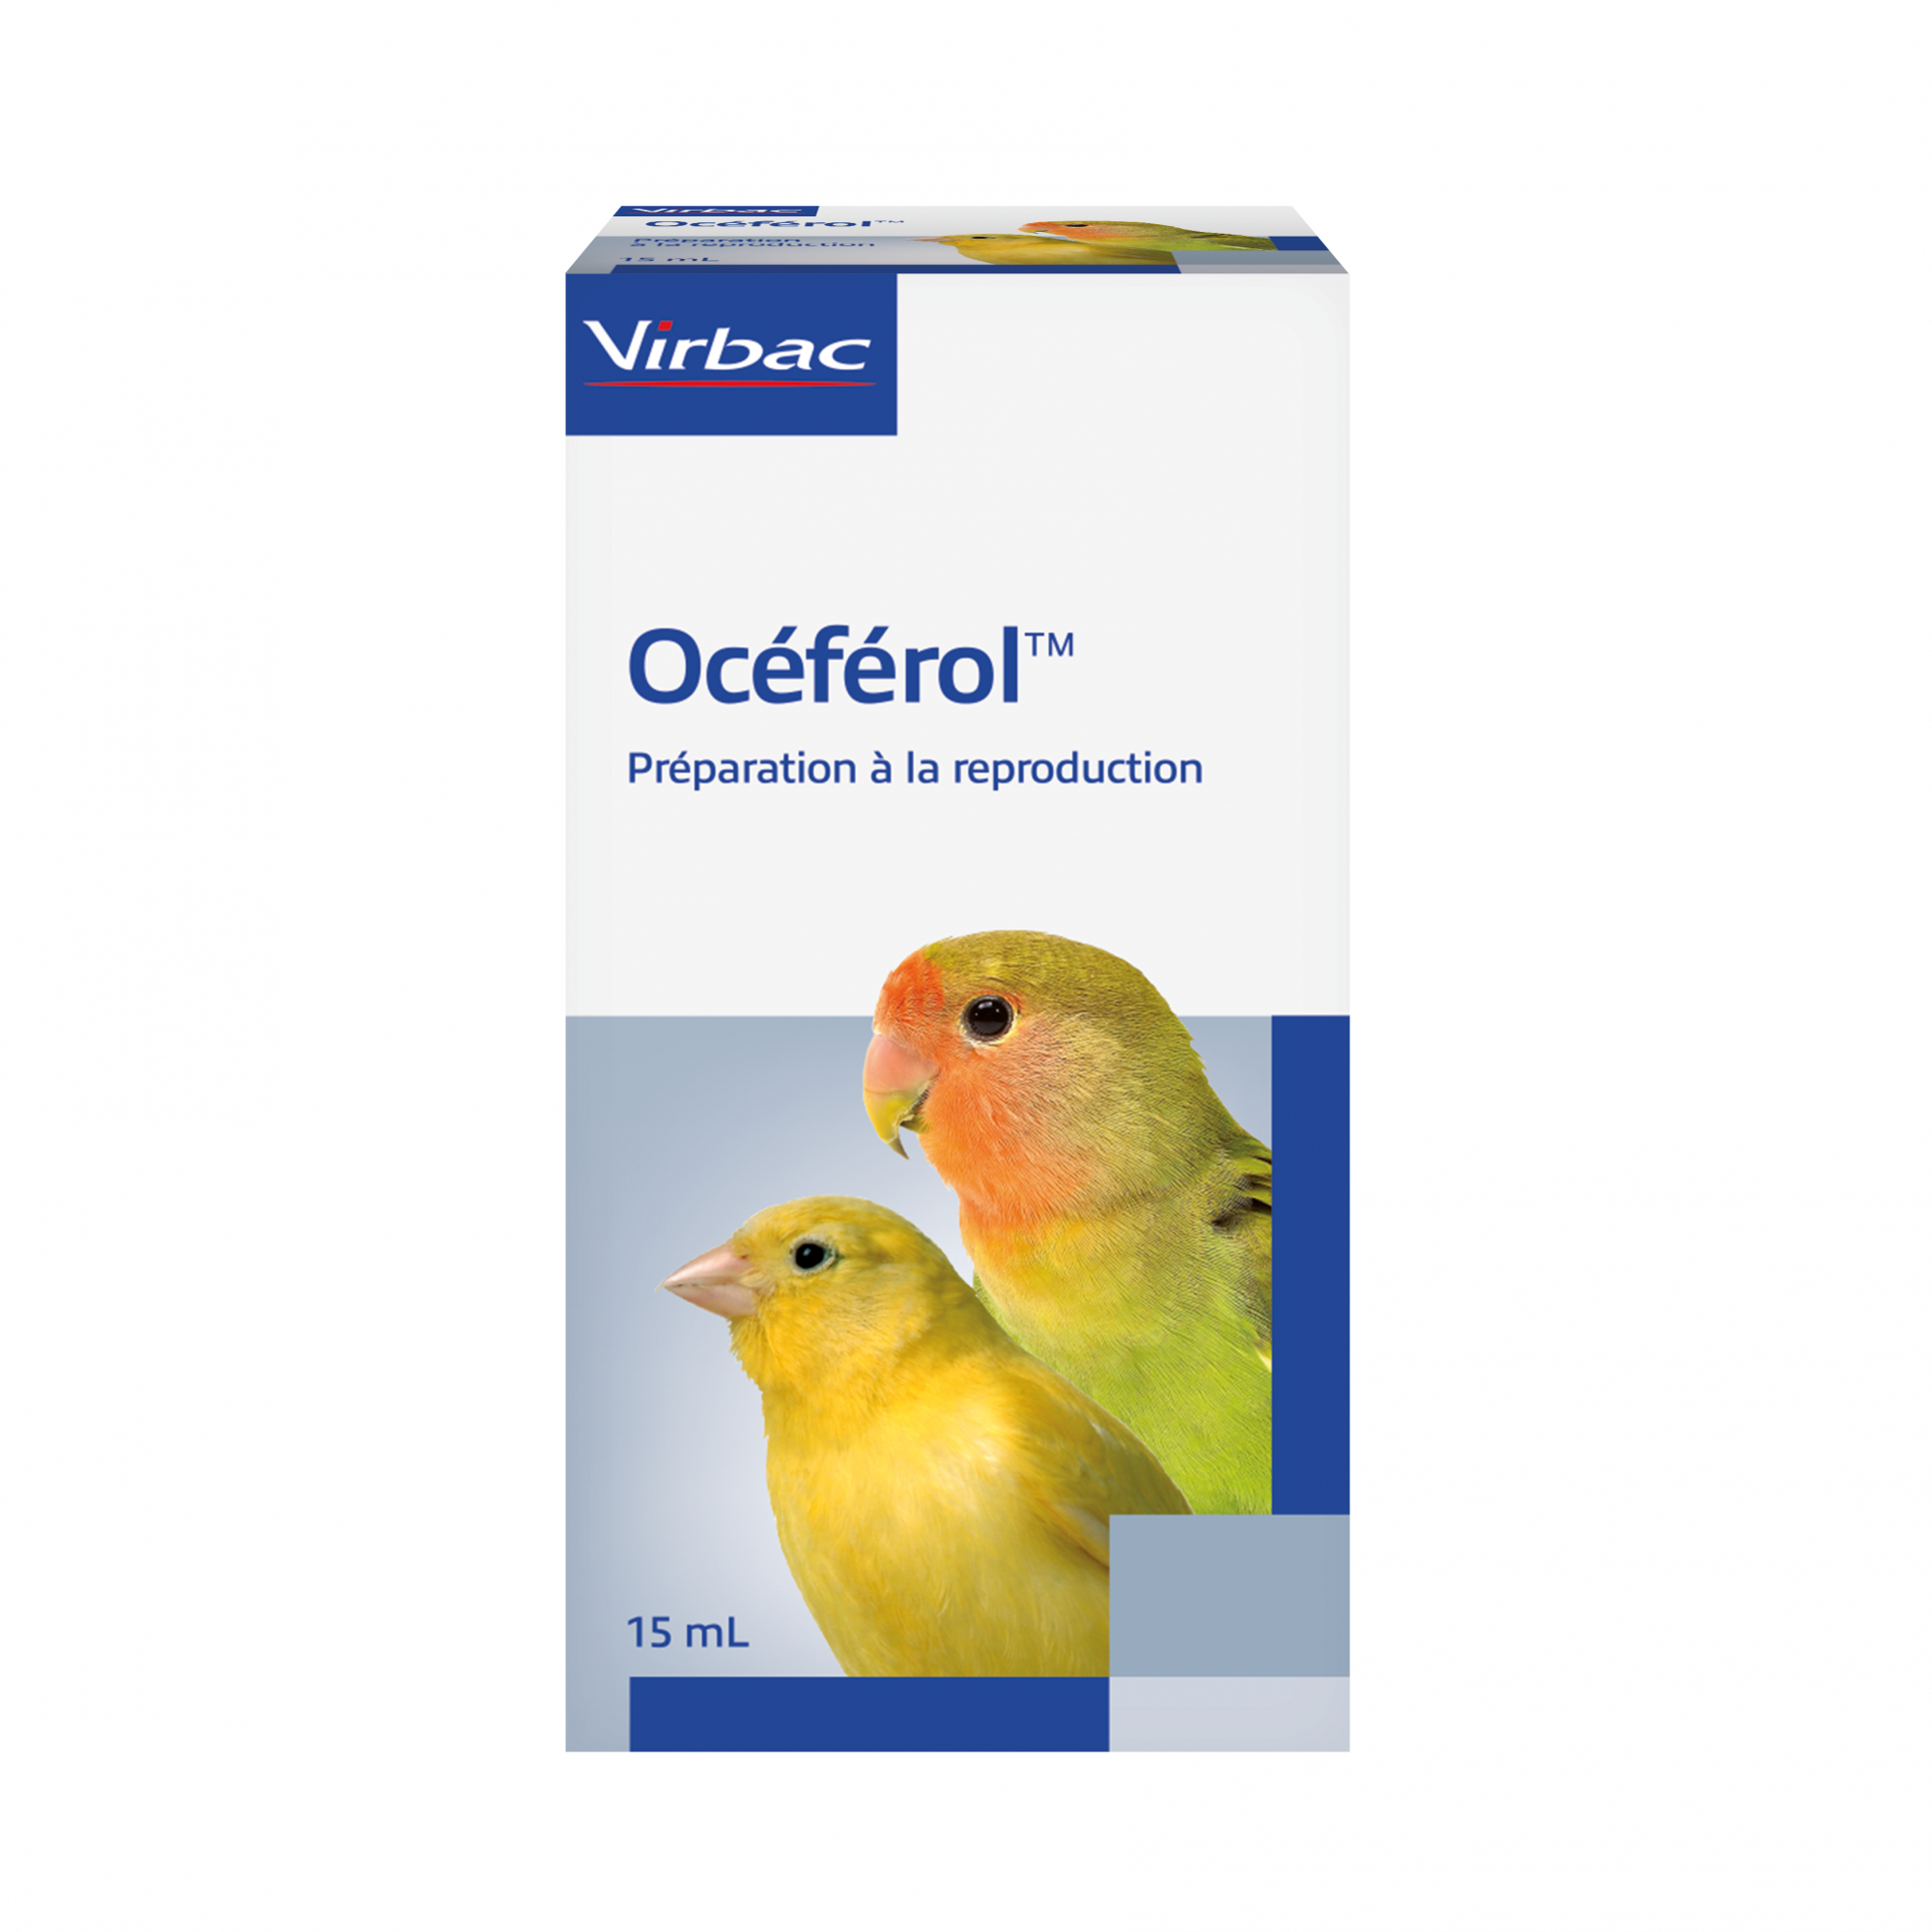 Virbac Oceferol Vitamin E für die Brutzeit der Vögel